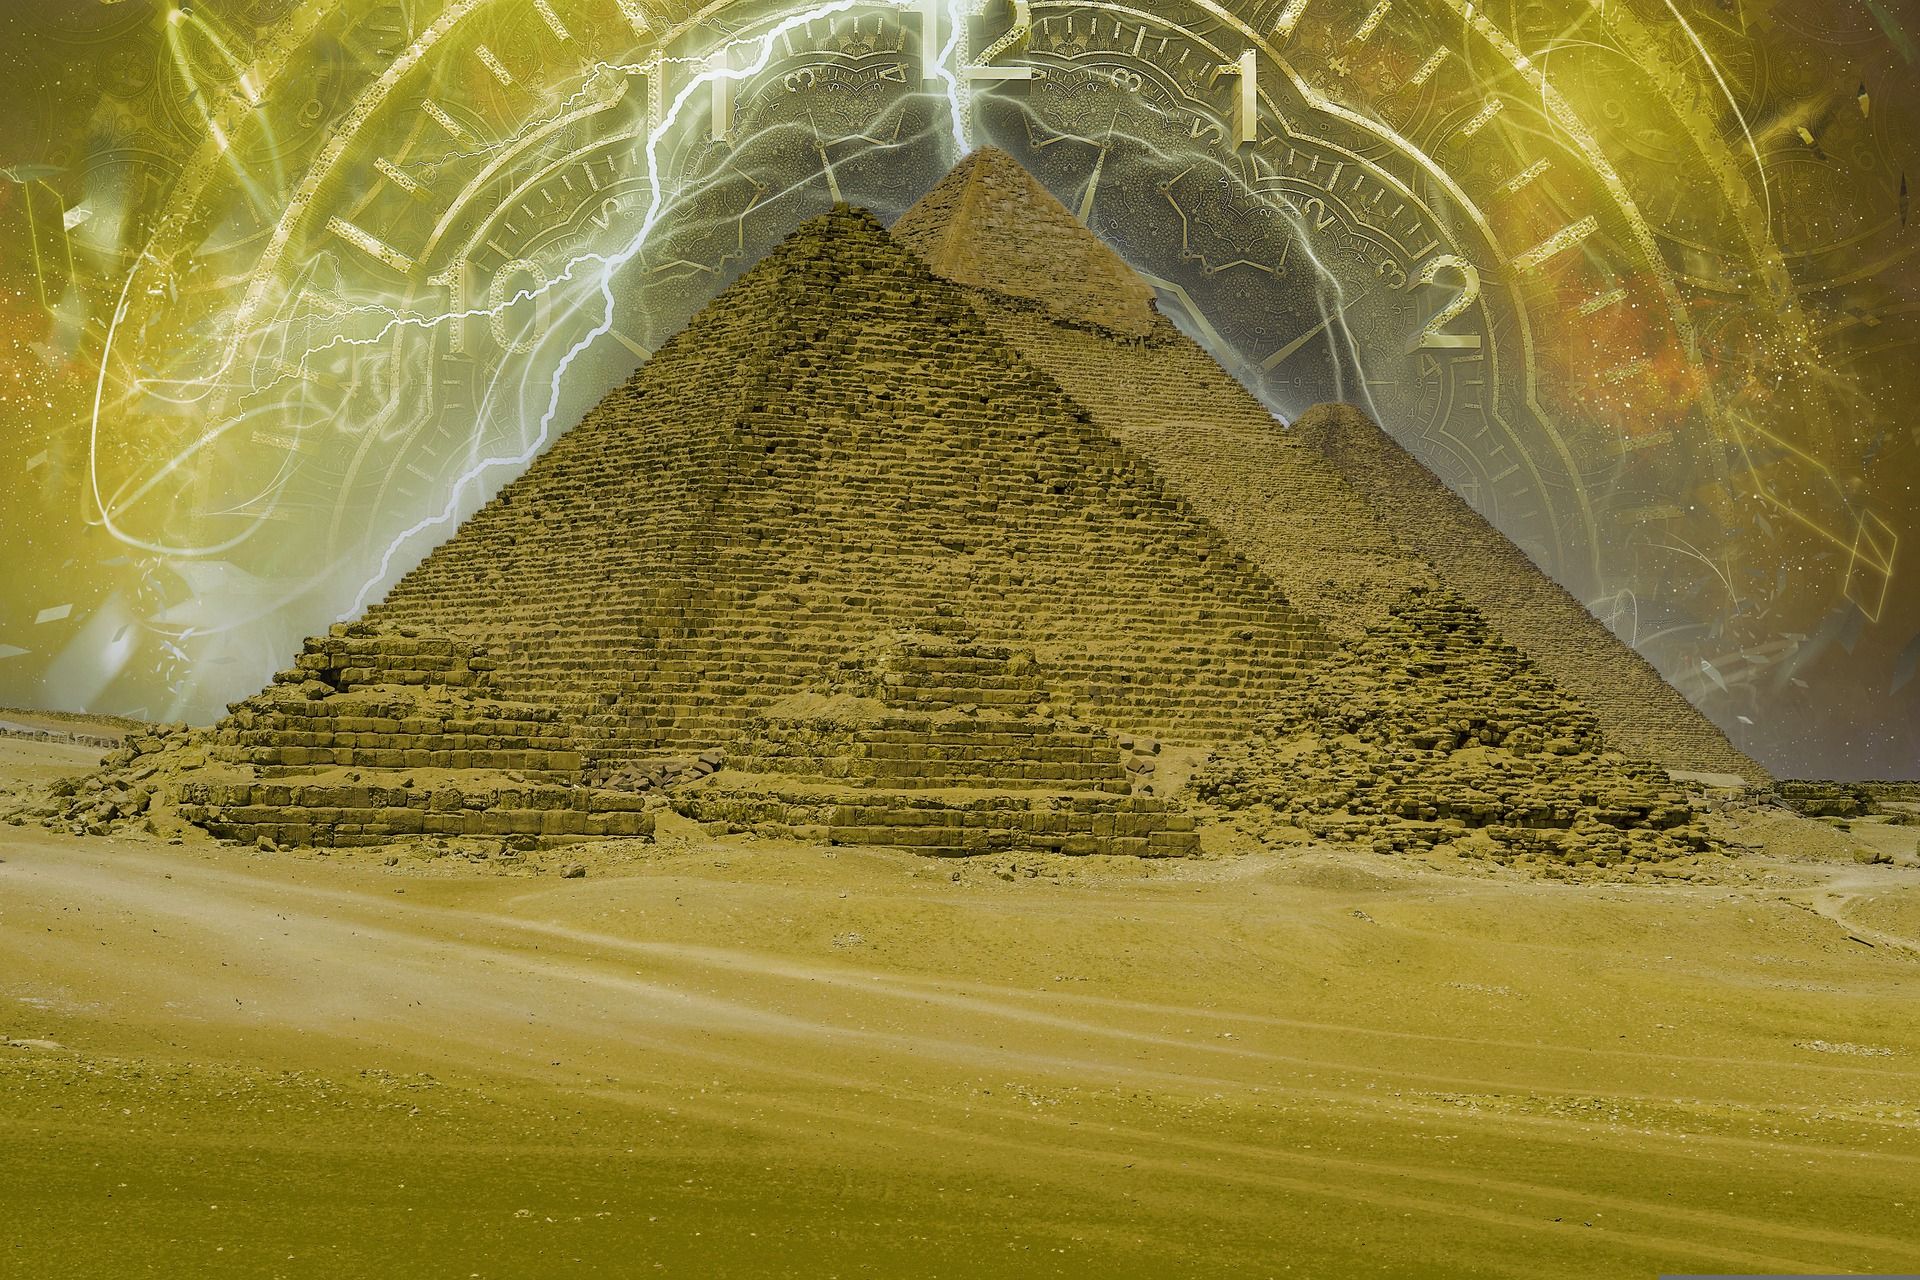 pyramids-7297415_1920.jpg